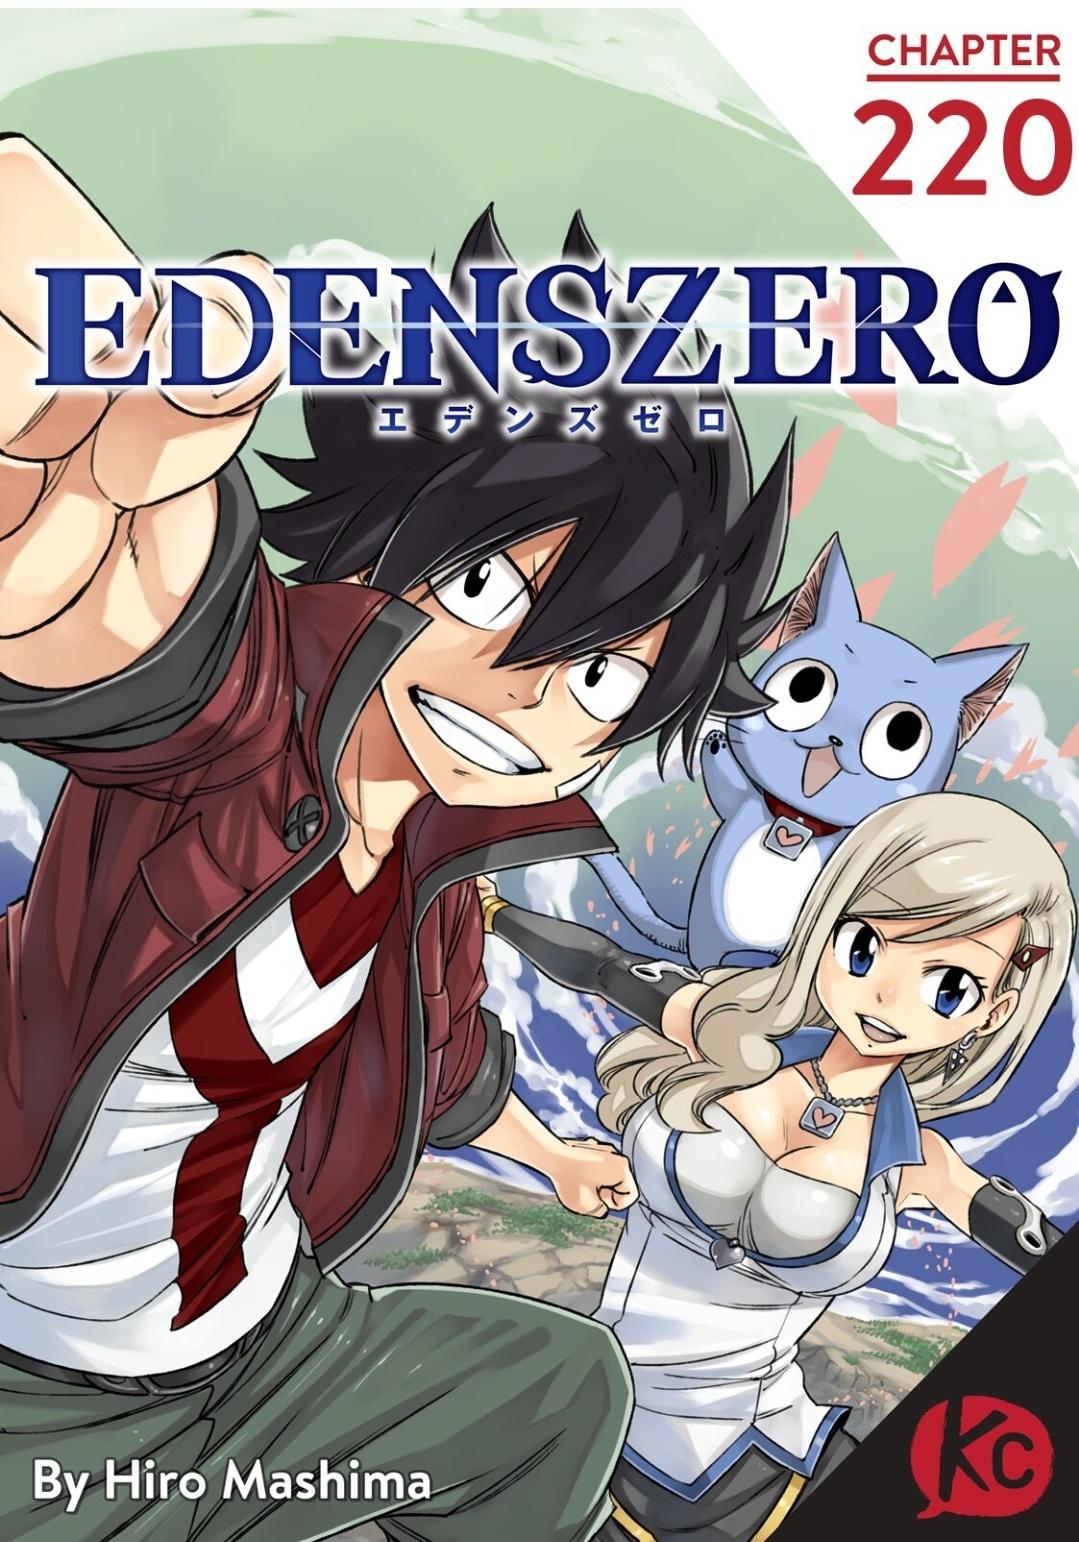 Edens Zero Chapter 220 image 01